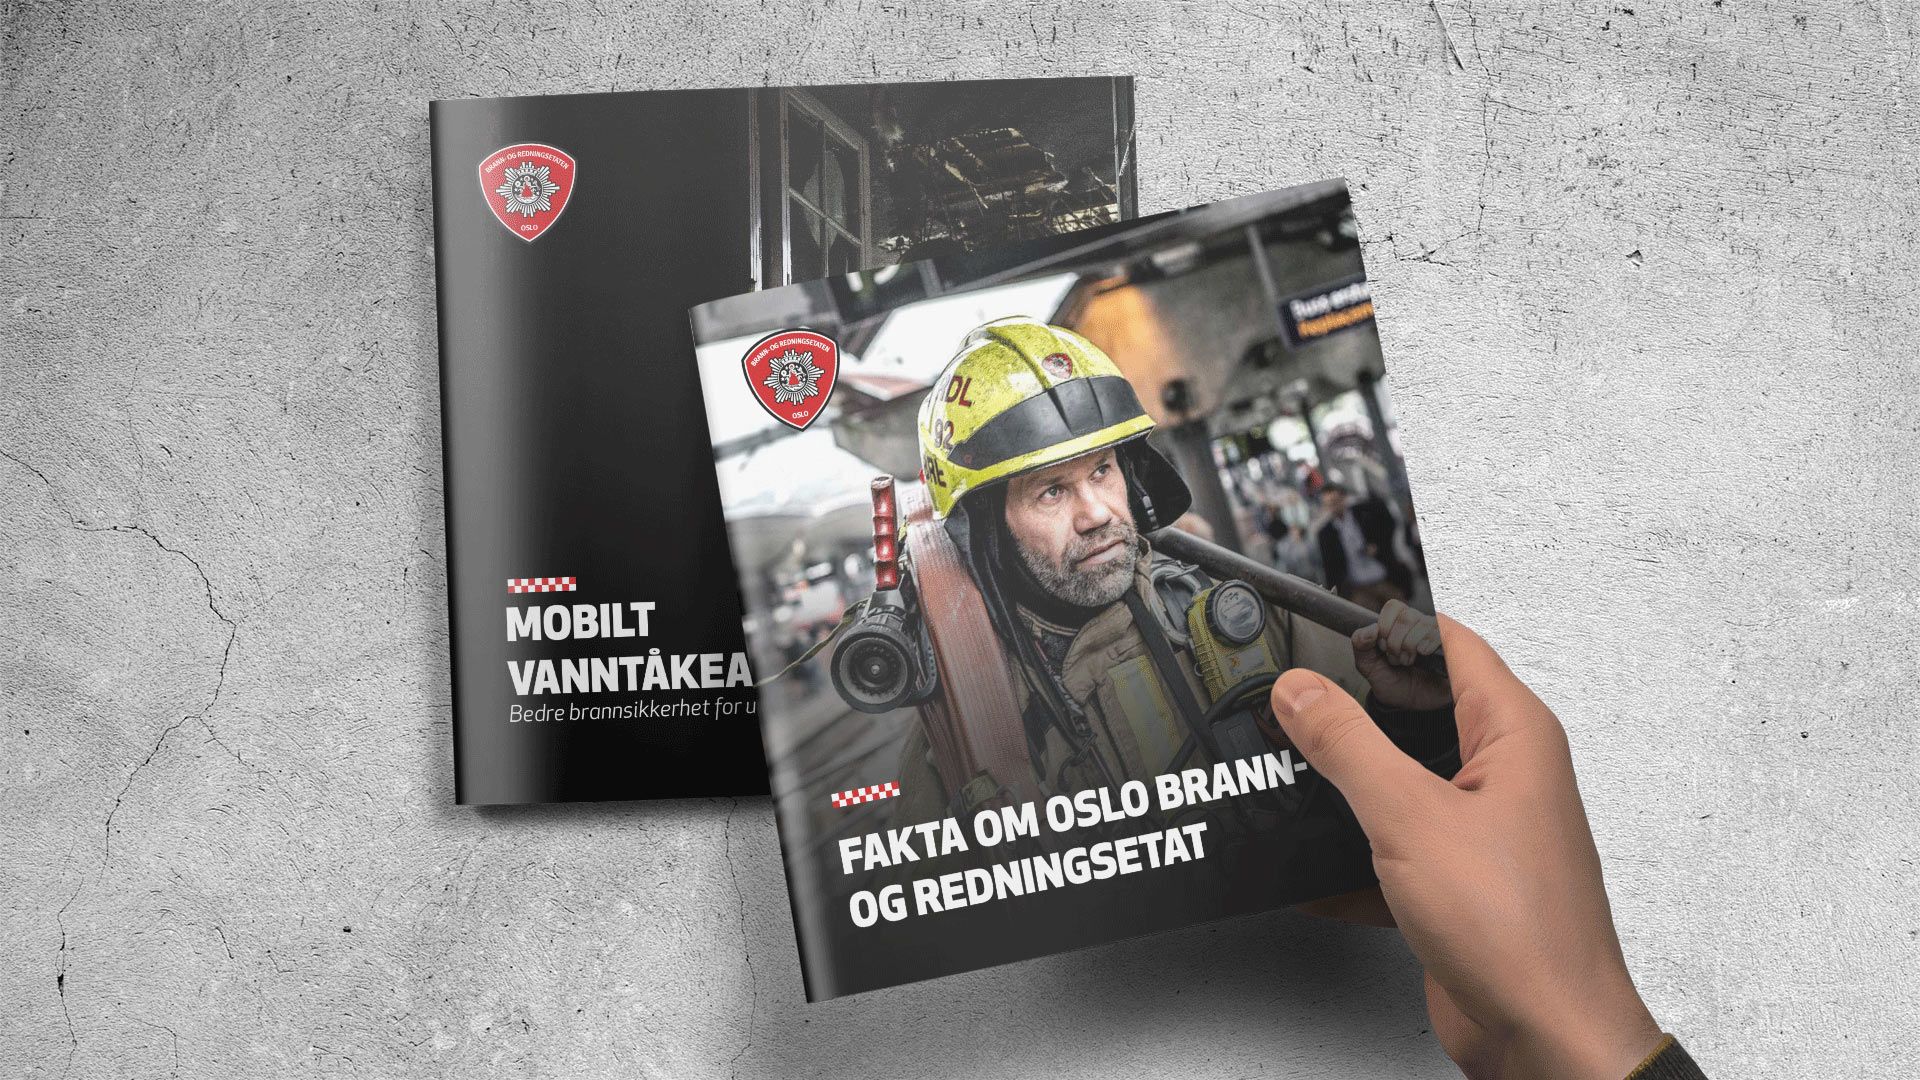 Faktabrosjyre fra Oslo brann- og redningsetat